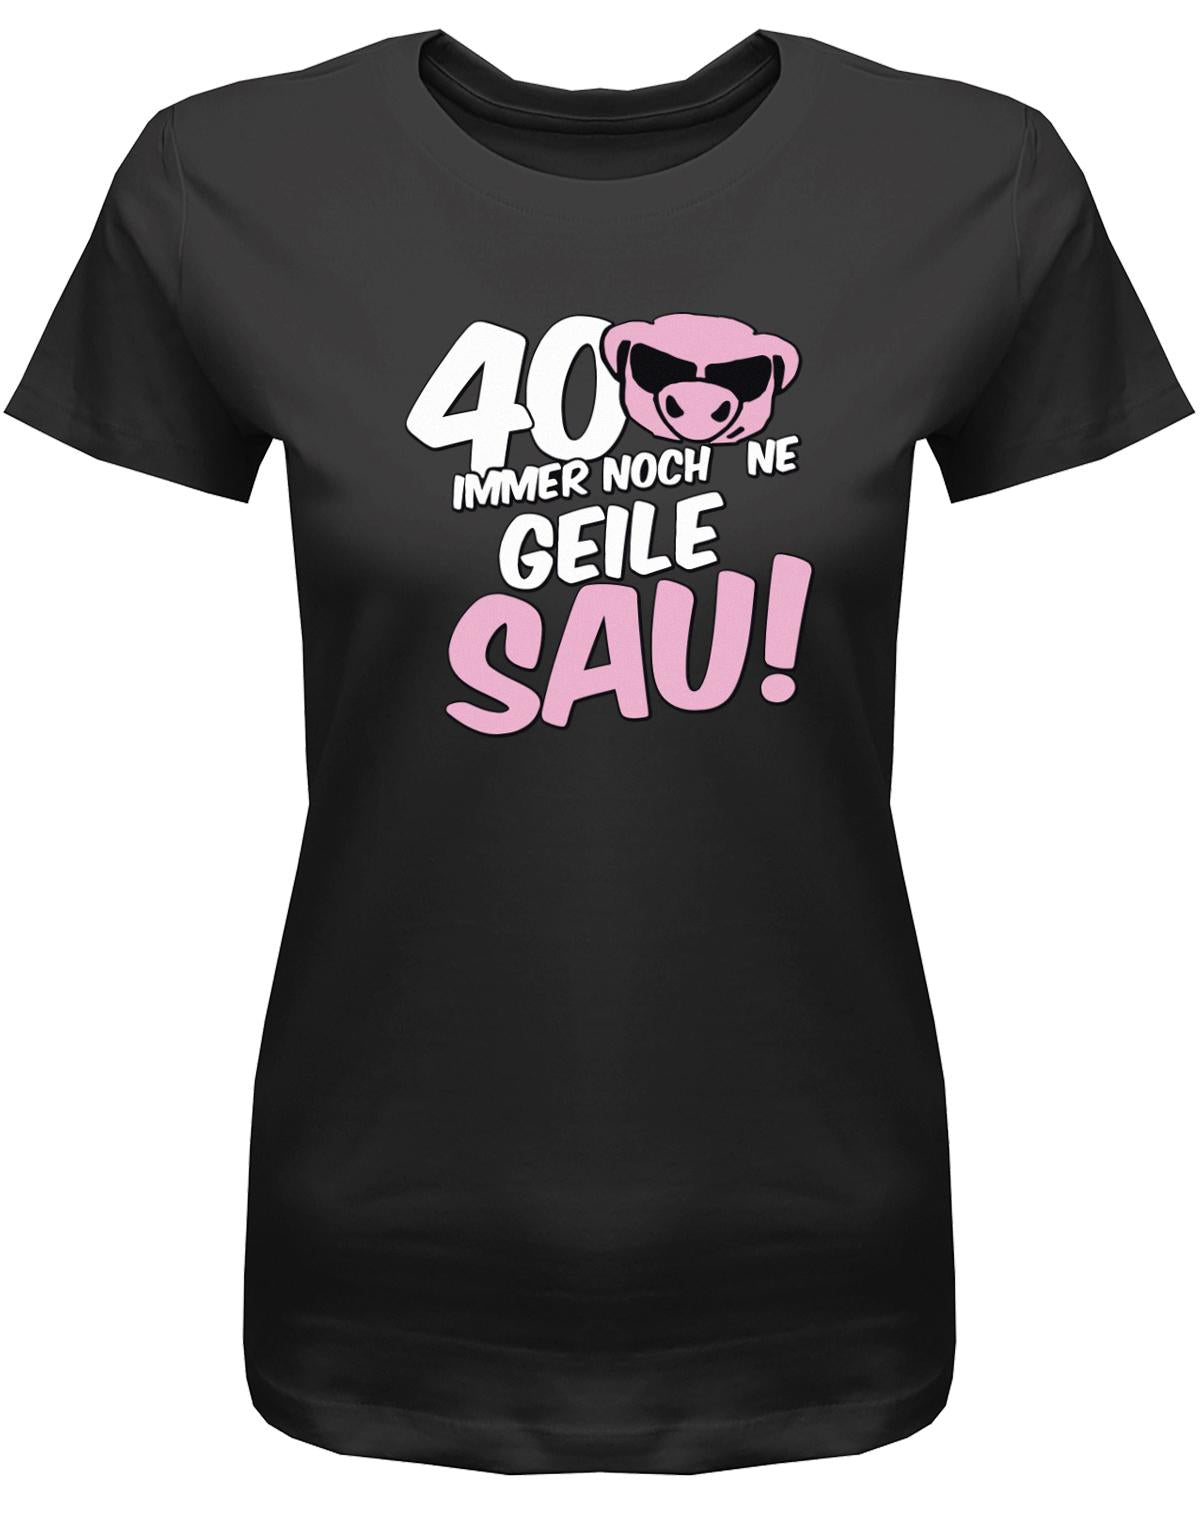 Lustiges T-Shirt zum 40 Geburtstag für die Frau Bedruckt mit 40 Immer noch 'ne geile Sau! Sau mit Sonnenbrille Schwarz